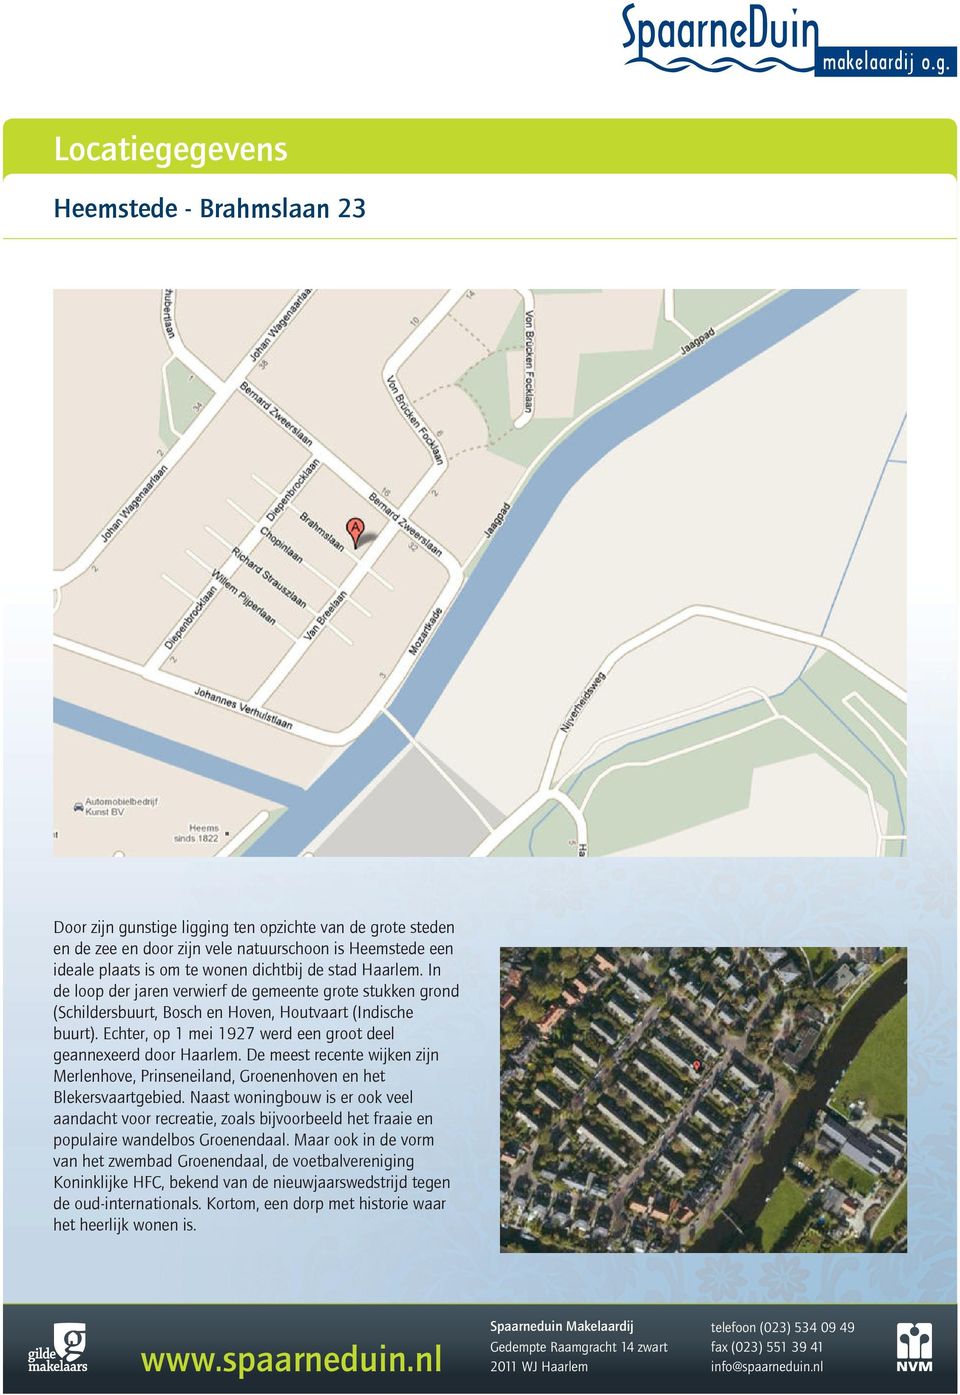 De meest recente wijken zijn Merlenhove, Prinseneiland, Groenenhoven en het Blekersvaartgebied.